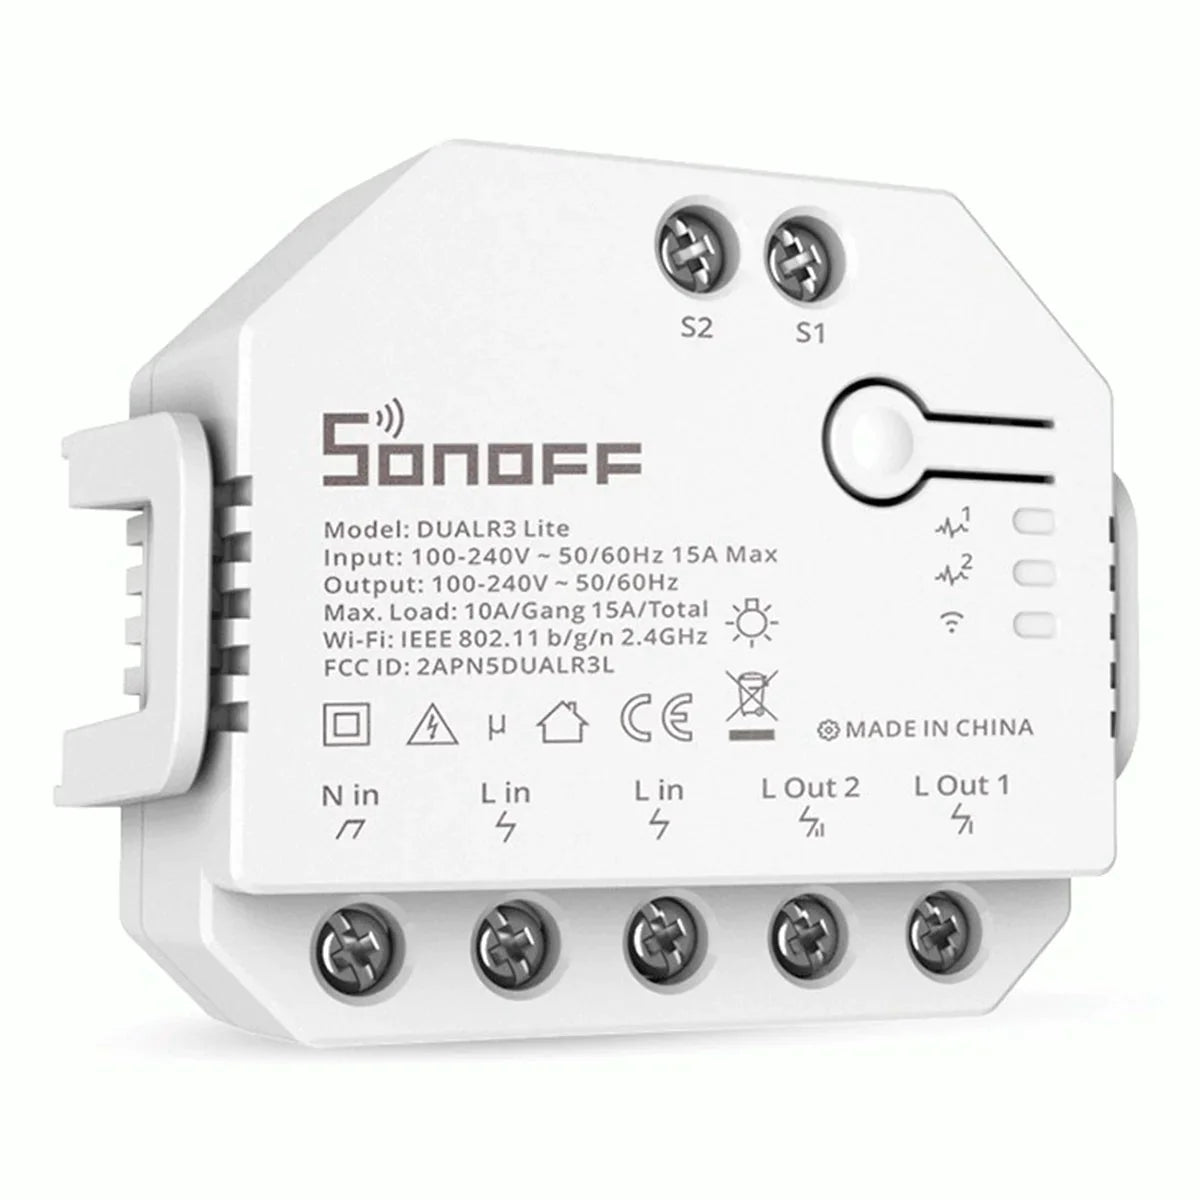 Sonoff Dual R3 Lite Comutador c/ medição de energia Wifi: Controlo remoto via smartphone.